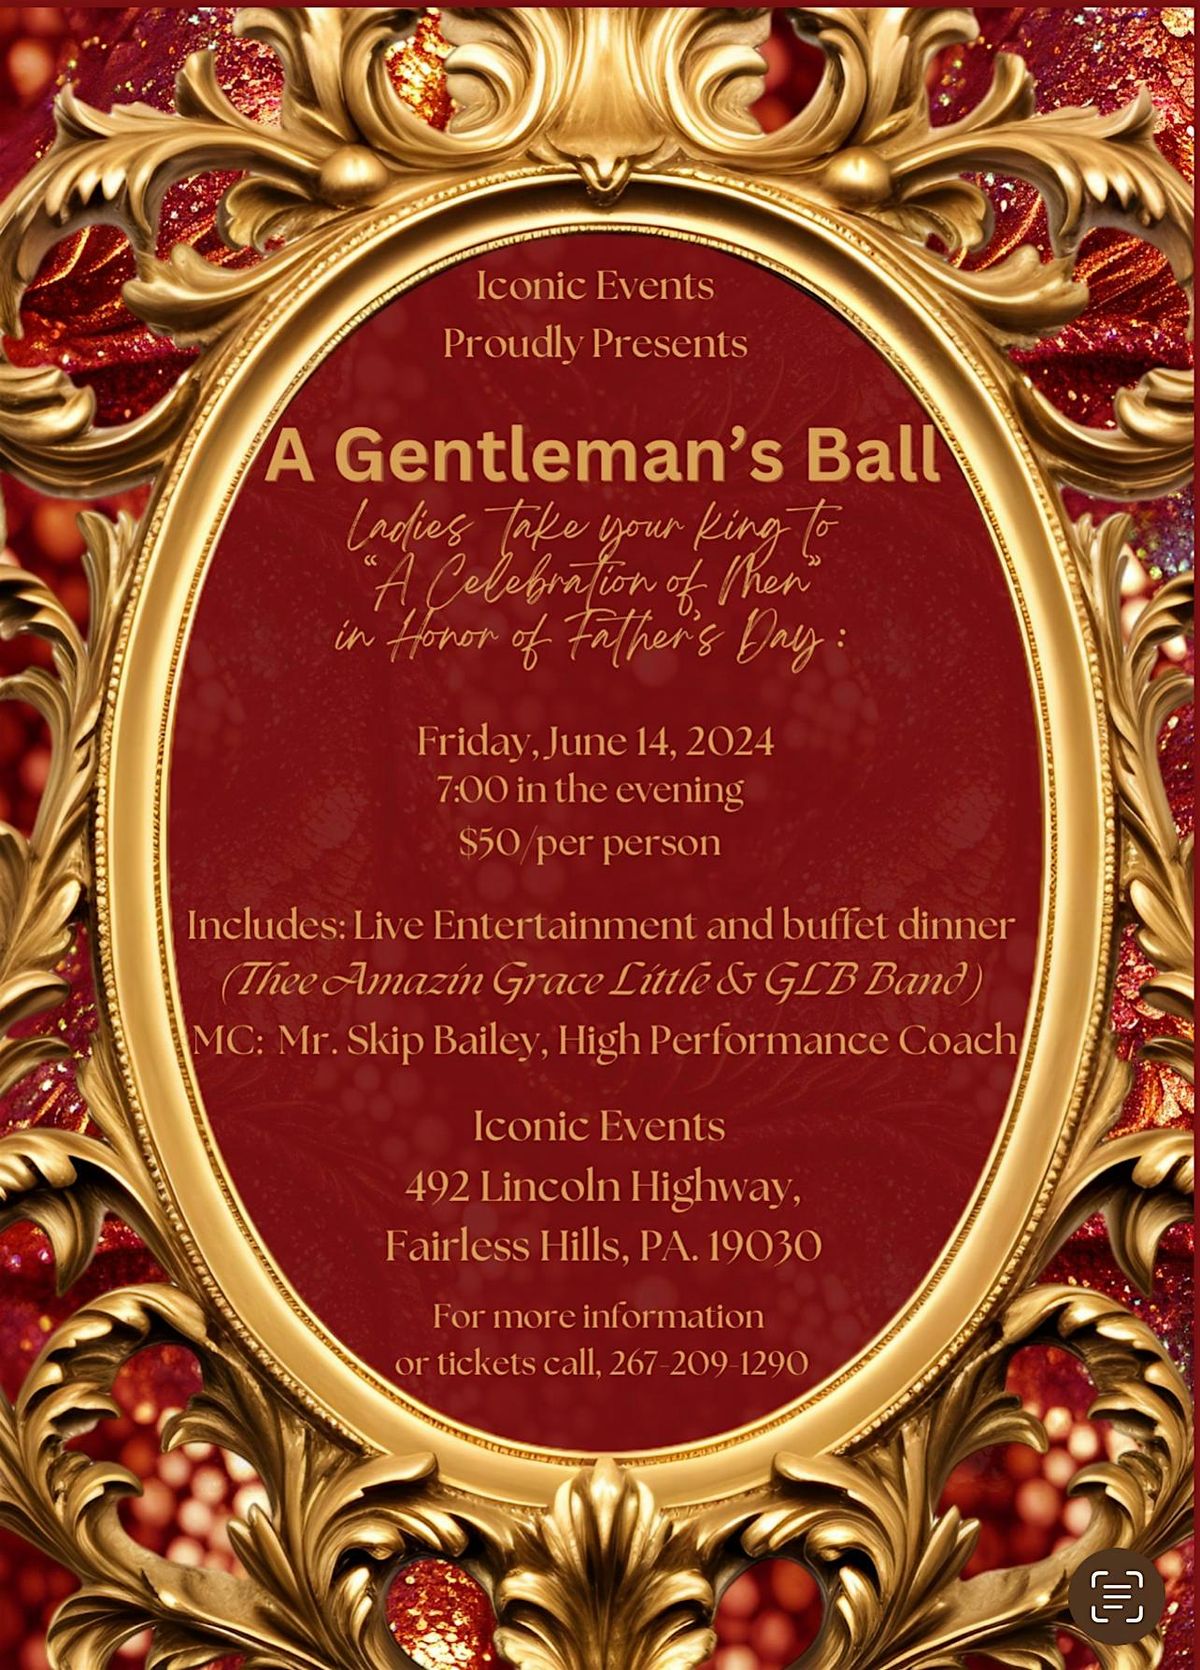 A Gentleman's Ball Event